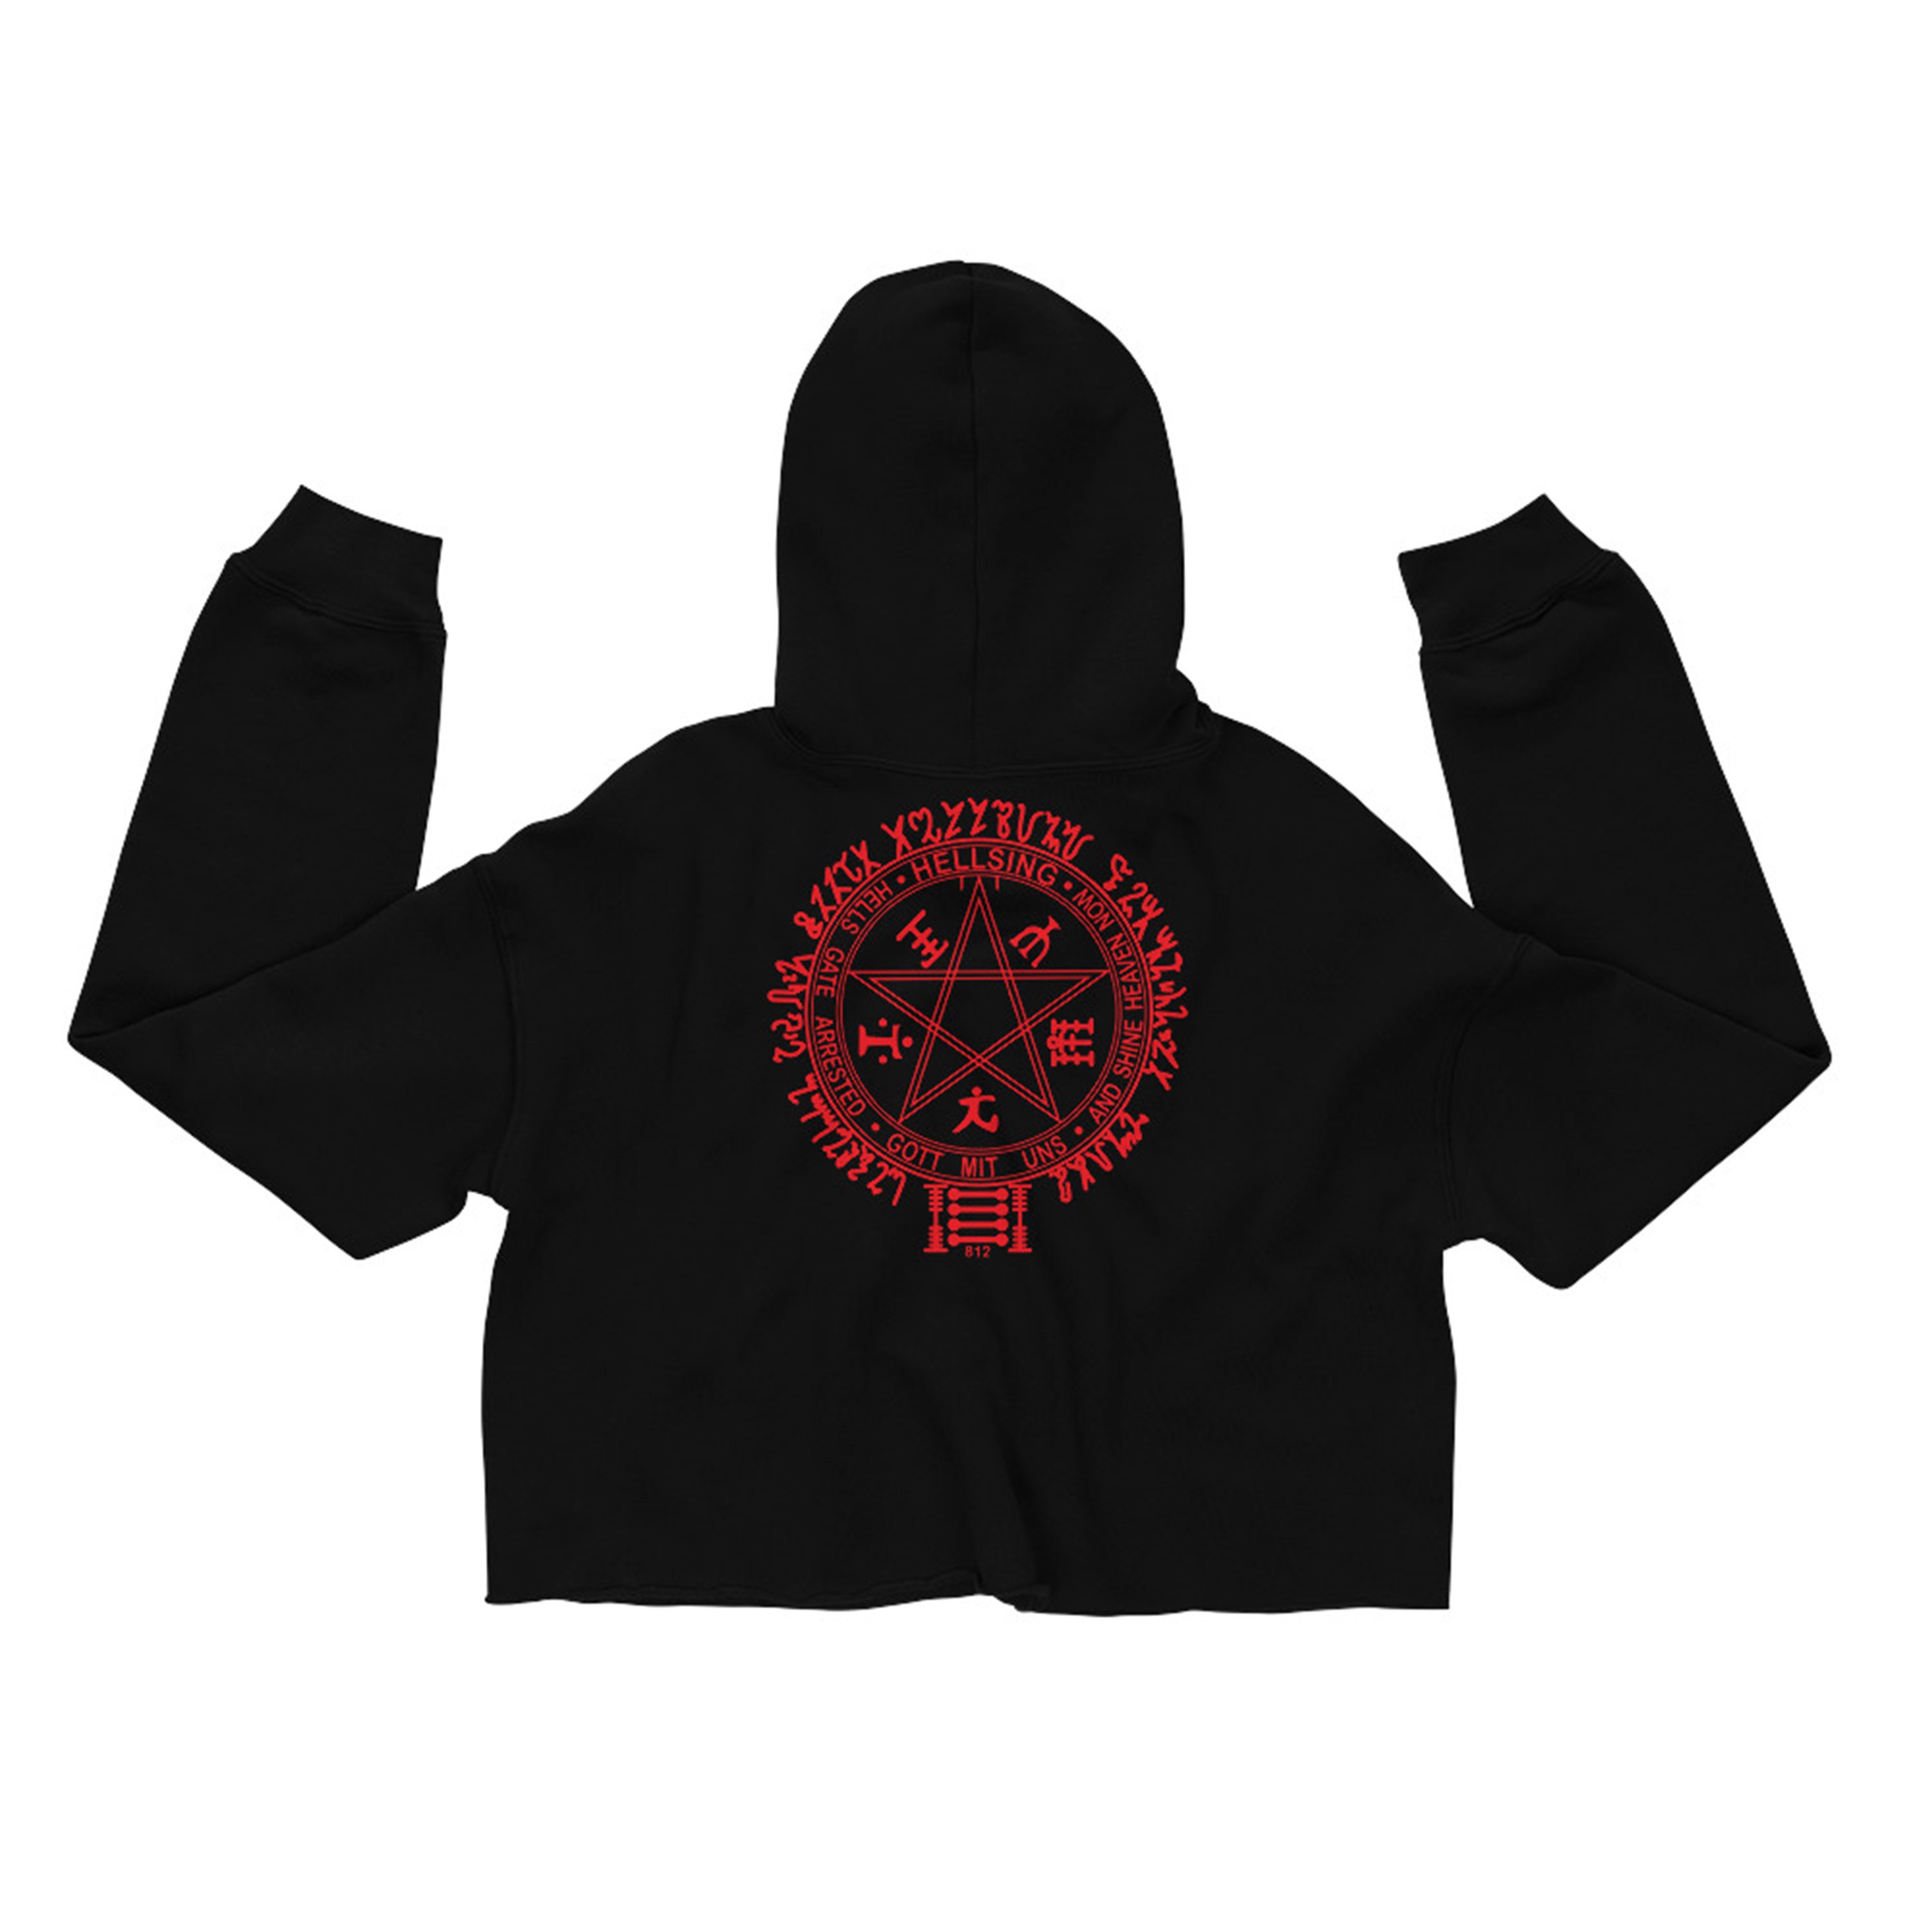 Alucard Pentagram Crop Hoodie cropped hooded sweatshirt | Etsy